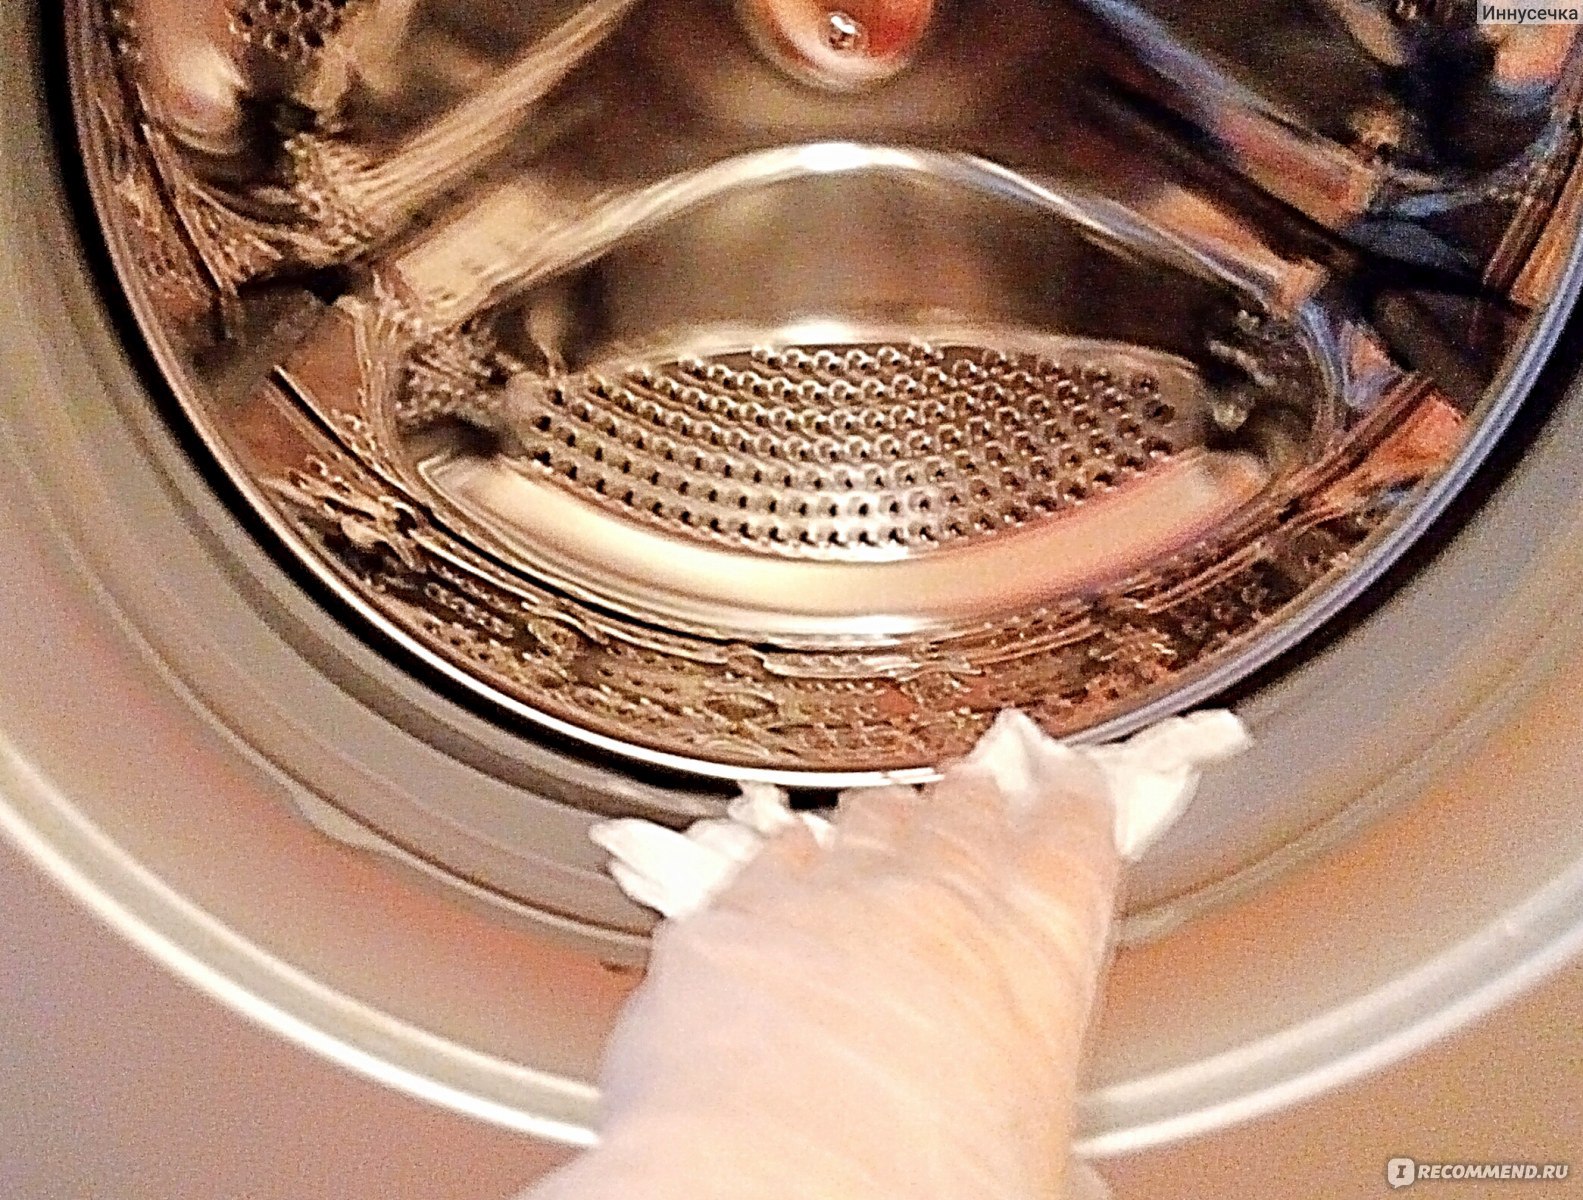 Чистка стиральной машины от накипи. Чистка стиральной машины. Барабан машинки. Запах из стиральной машины средства. Очищение барабана от запаха стирал машинка.